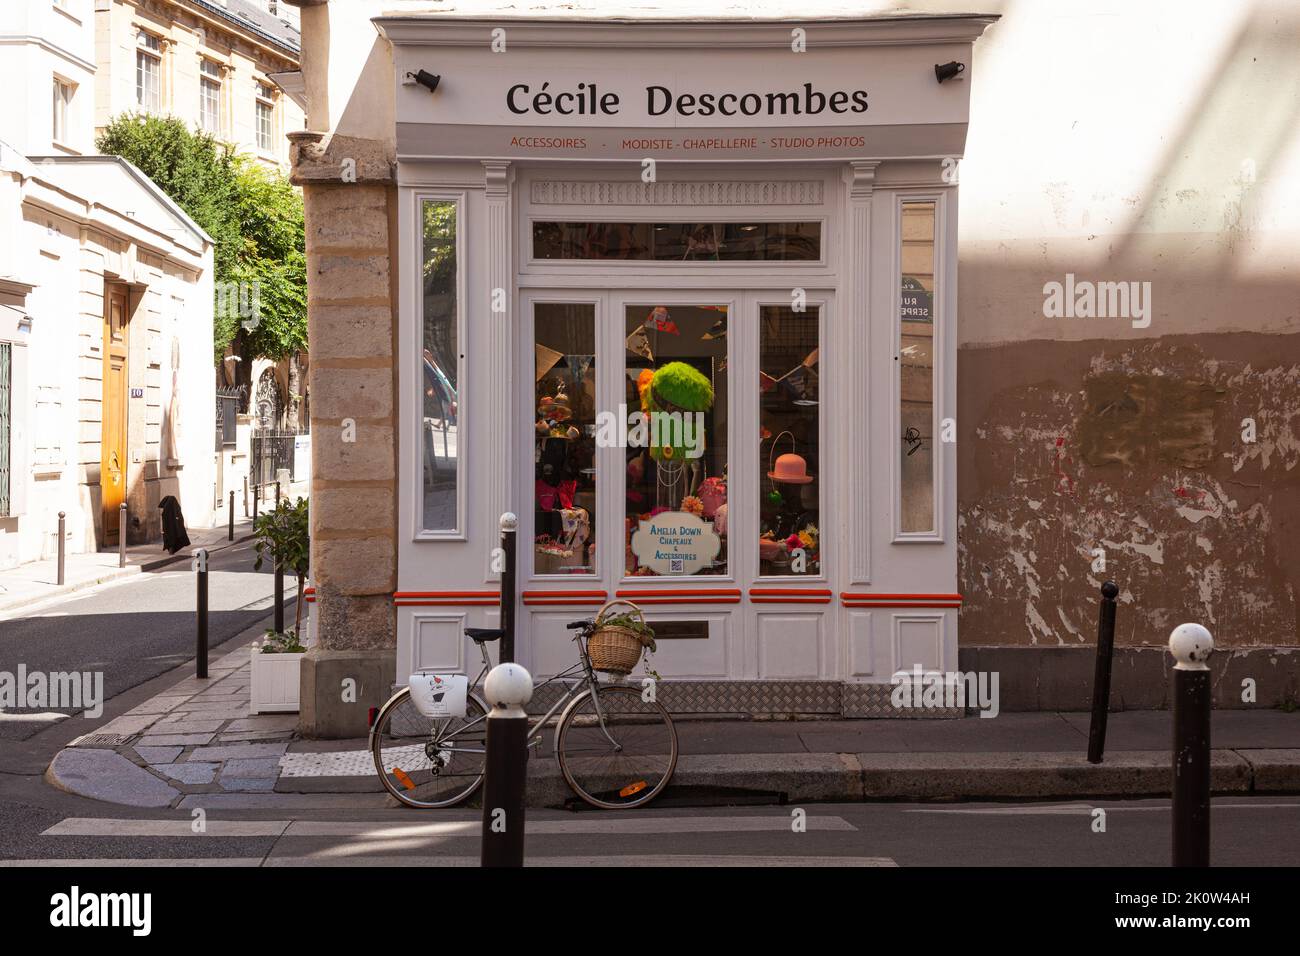 Parigi, Francia - Luglio, 15: Vetrina del negozio di accessori Cécile Descombes nella tipica strada francese con negozi al primo piano in casa. Vintage Foto Stock